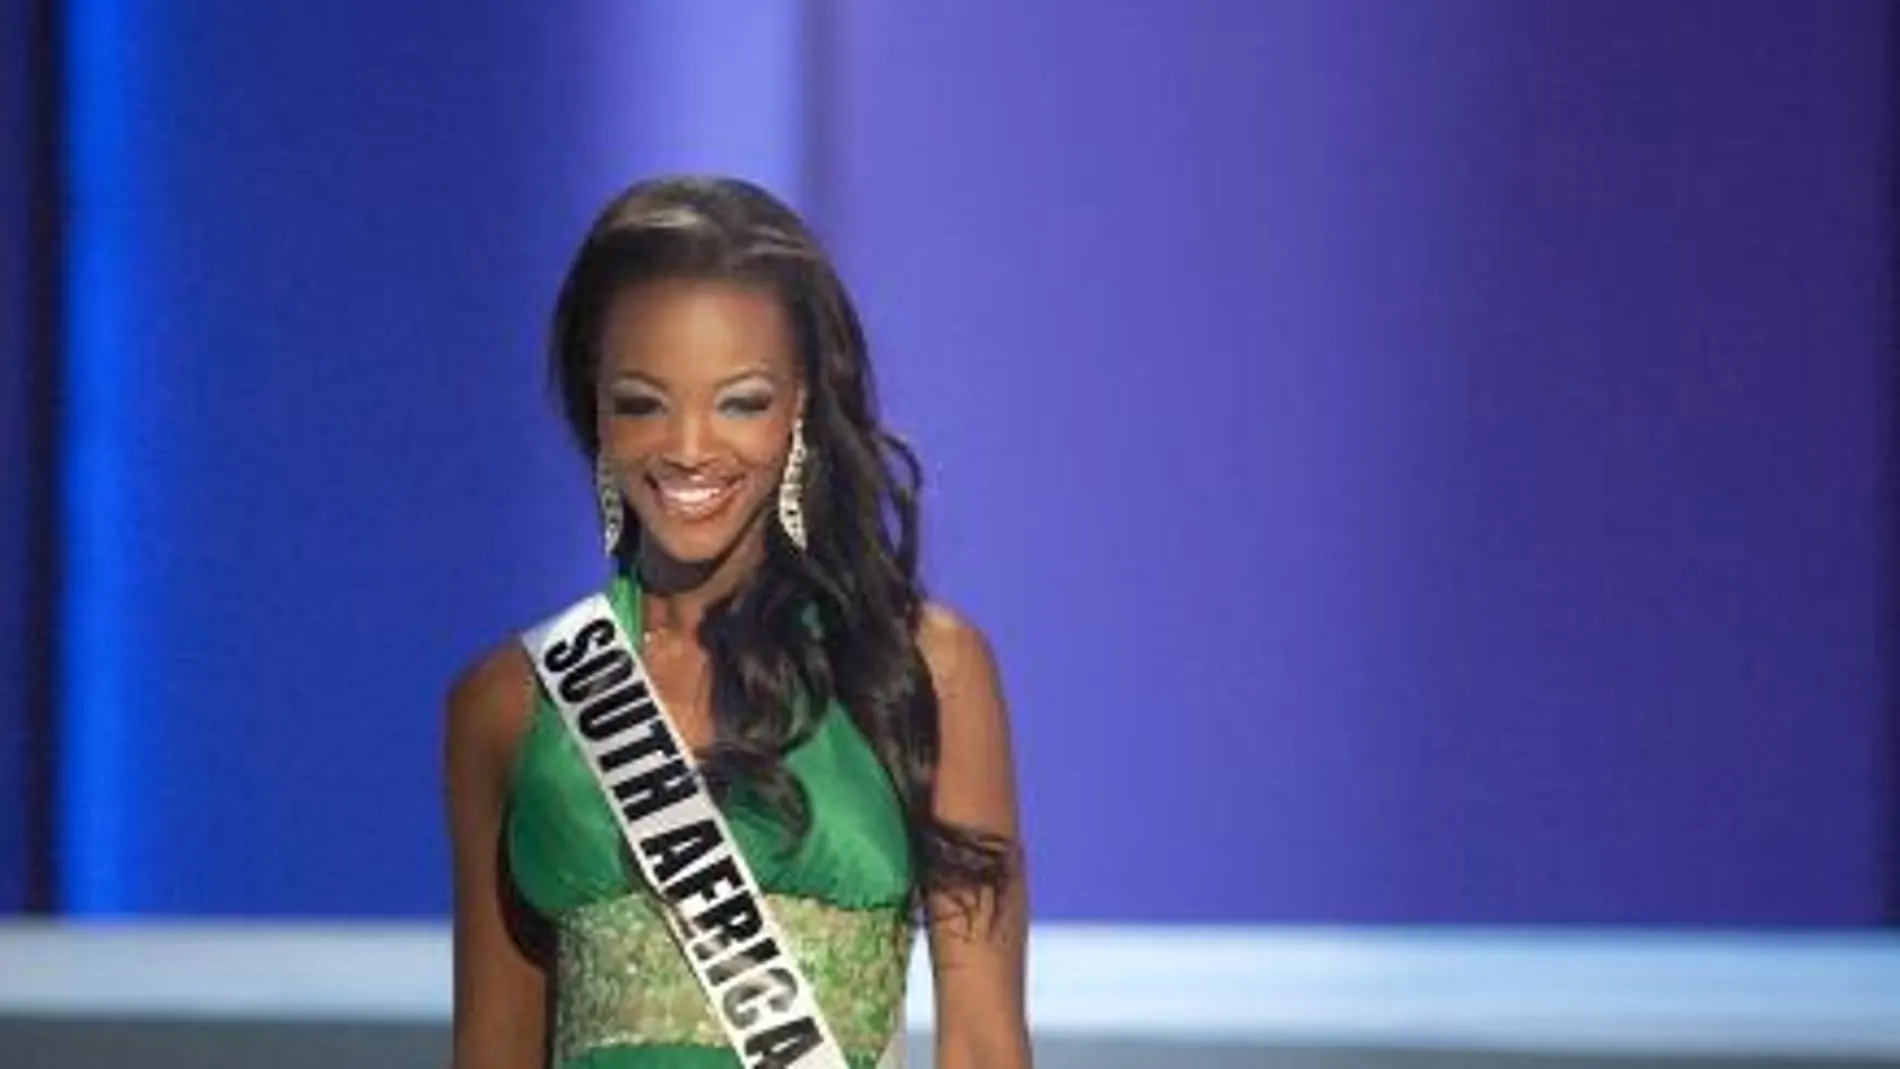 Candidatas de 89 países disputan en La candidata al título Miss Universo 2011 por Sudáfrica, Bokang MontjanePaulo la corona de Miss Universo 2011